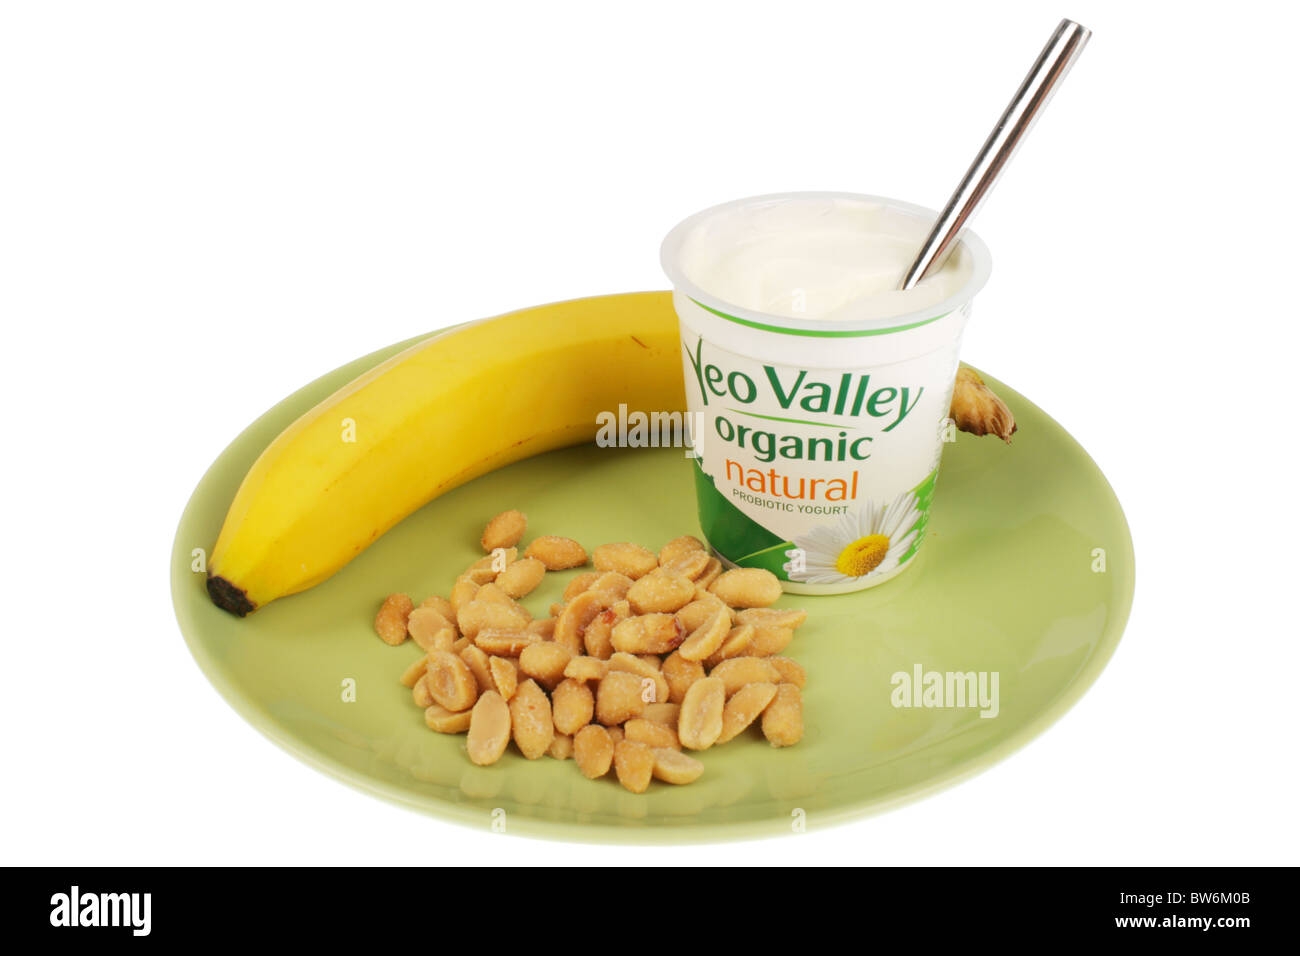 Yogurt with Banana and Salted Peanuts Stock Photo